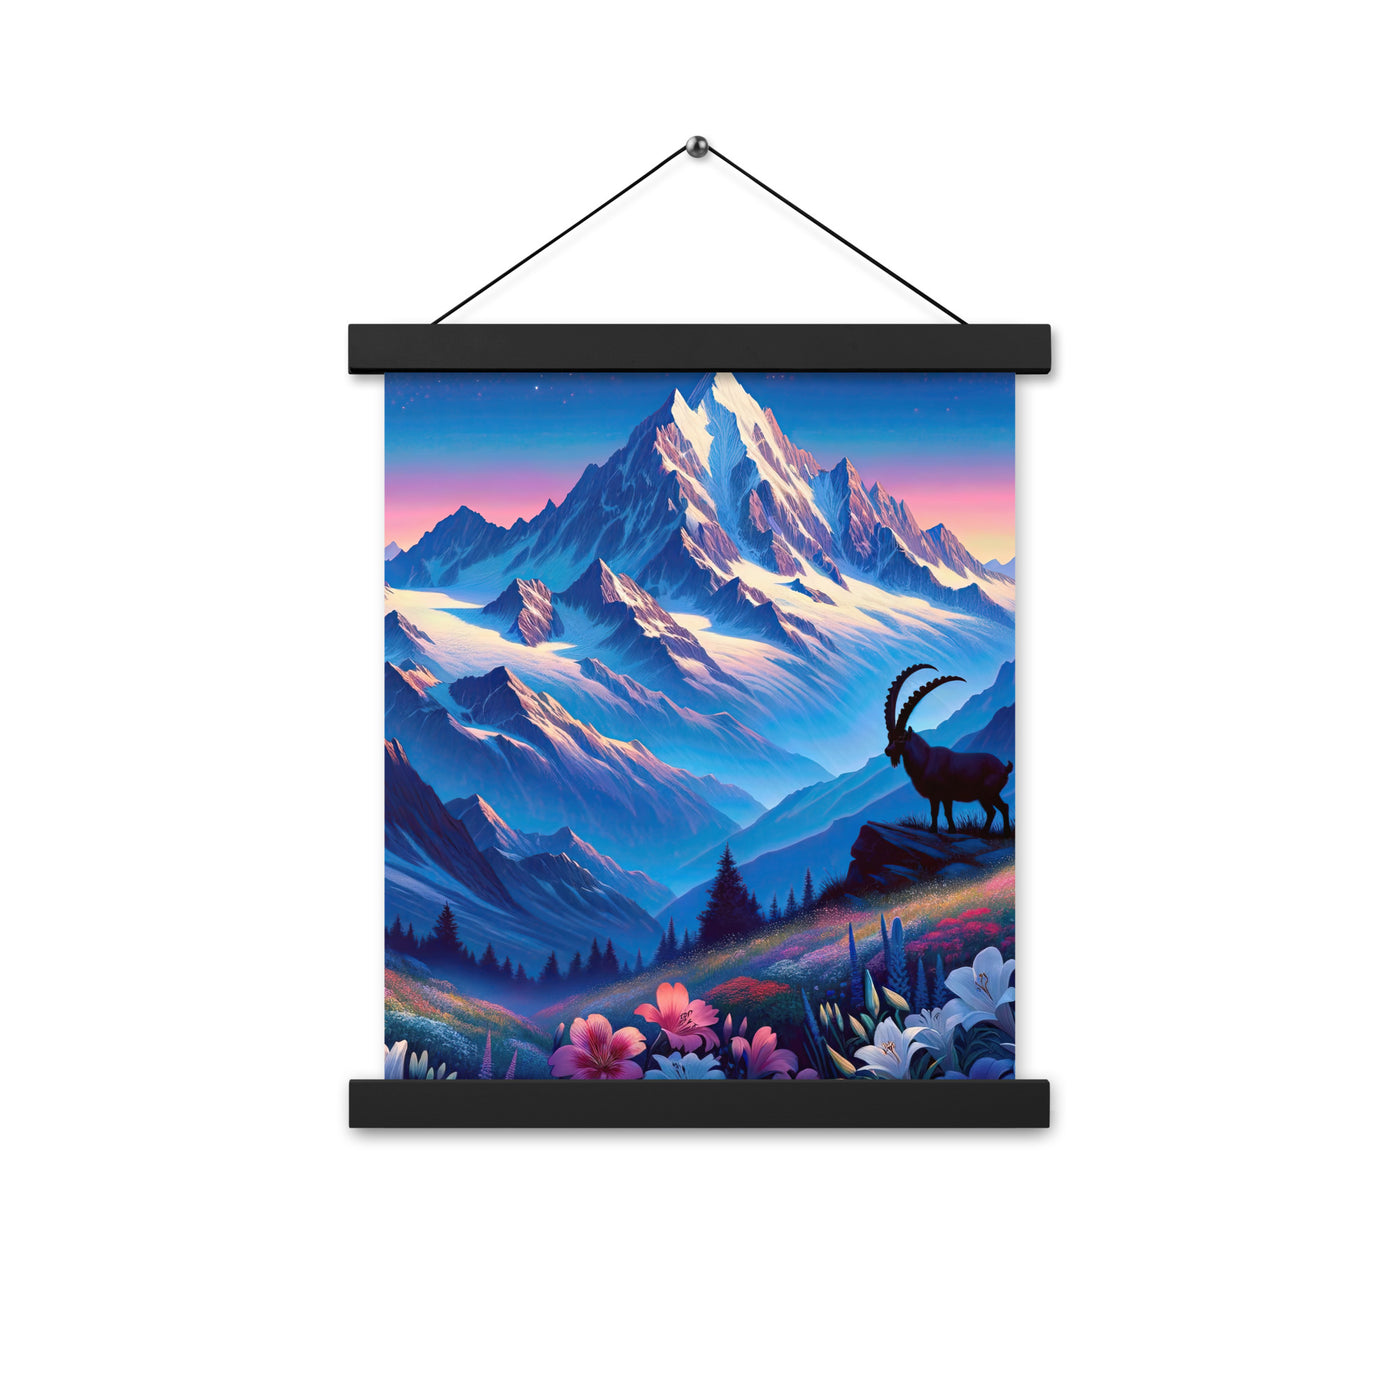 Steinbock bei Dämmerung in den Alpen, sonnengeküsste Schneegipfel - Premium Poster mit Aufhängung berge xxx yyy zzz 27.9 x 35.6 cm